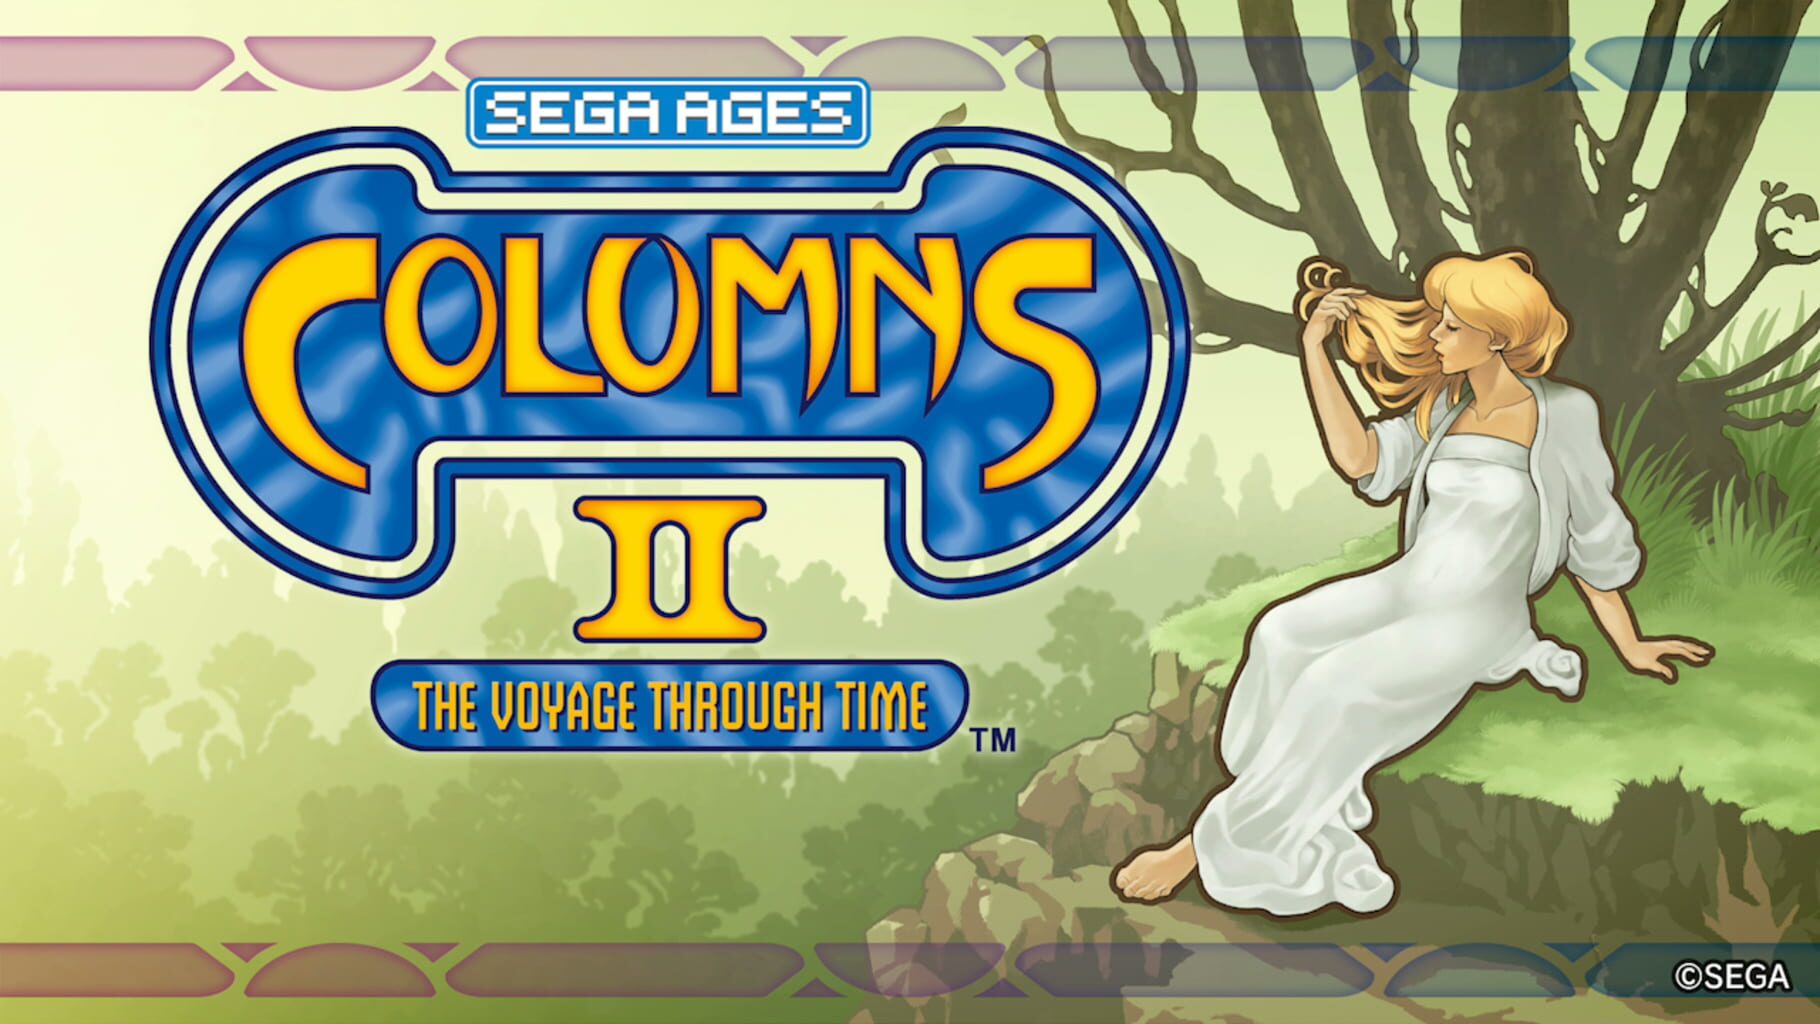 Arte - Sega Ages Columns II: The Voyage Through Time